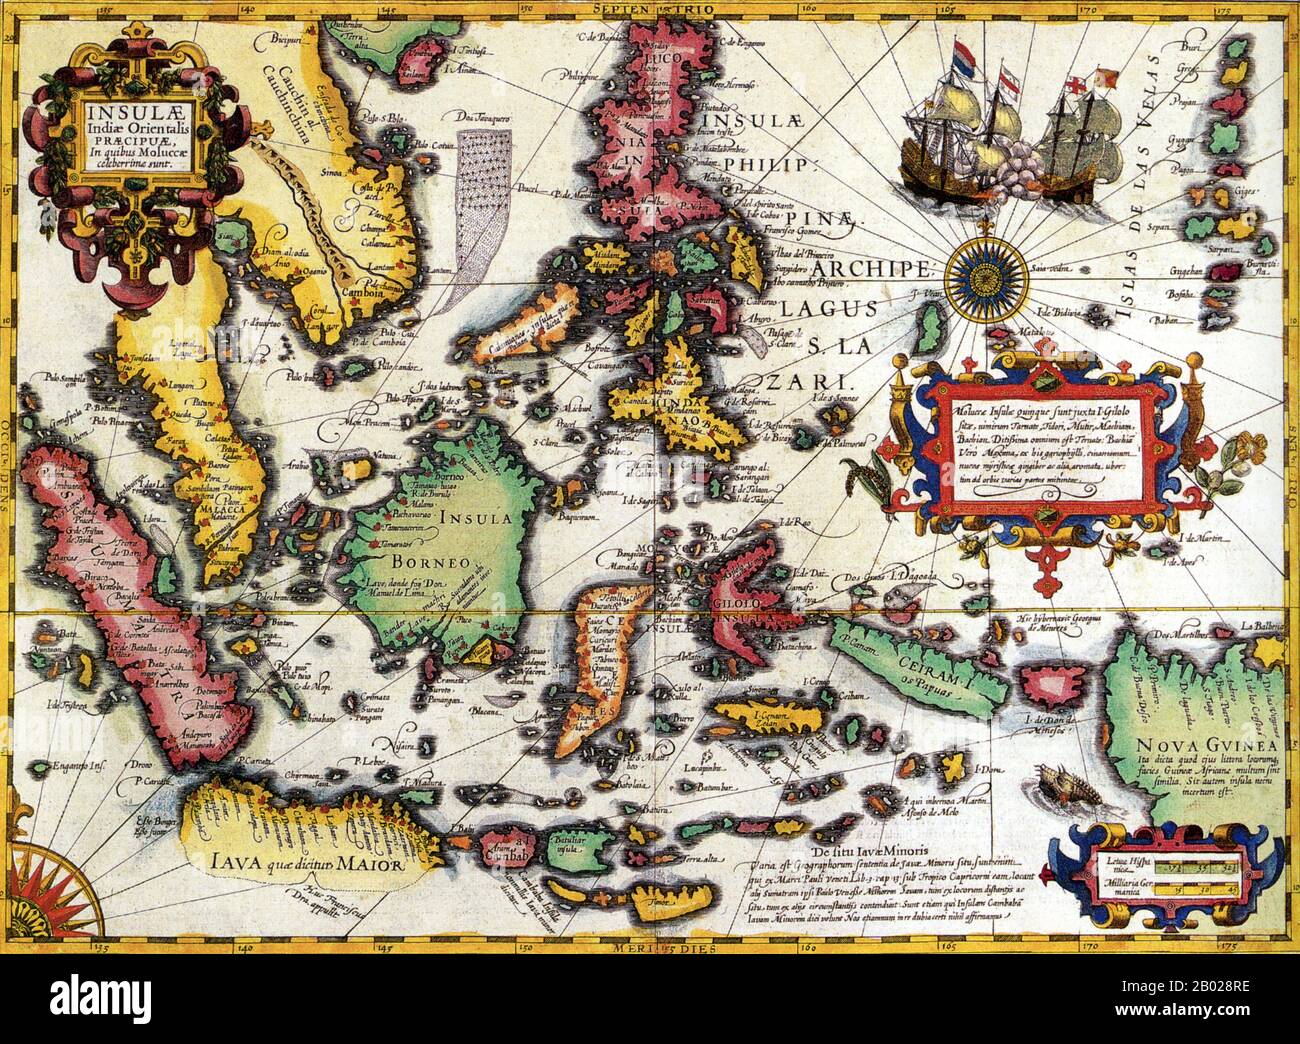 Eine sehr dekorative Karte der Ostindien aus dem Mercator-Hondius-Atlas. Sie erstreckt sich von den Philippinen über Timor und Sumatra bis nach Neuguinea, wobei sie die Gewürzinseln, eine Region von großer Bedeutung für das Europa des siebzehnten Jahrhunderts, aber eine, über die damals wenig bekannt war, detailliert beschreibt. Hondius stützte seine Karte auf portolan-Karten des portugiesischen Kartografen Bartolomeu Lasso. Besonders zu beachten ist der Kommentar Huc Franciscus Dra. Appulit, der von der unbekannten Südküste von Java auftaucht und Drakes Landung während seiner Weltumgehung 1577-80 darstellt. Von beträchtlichem zeitgemäßem r Stockfoto